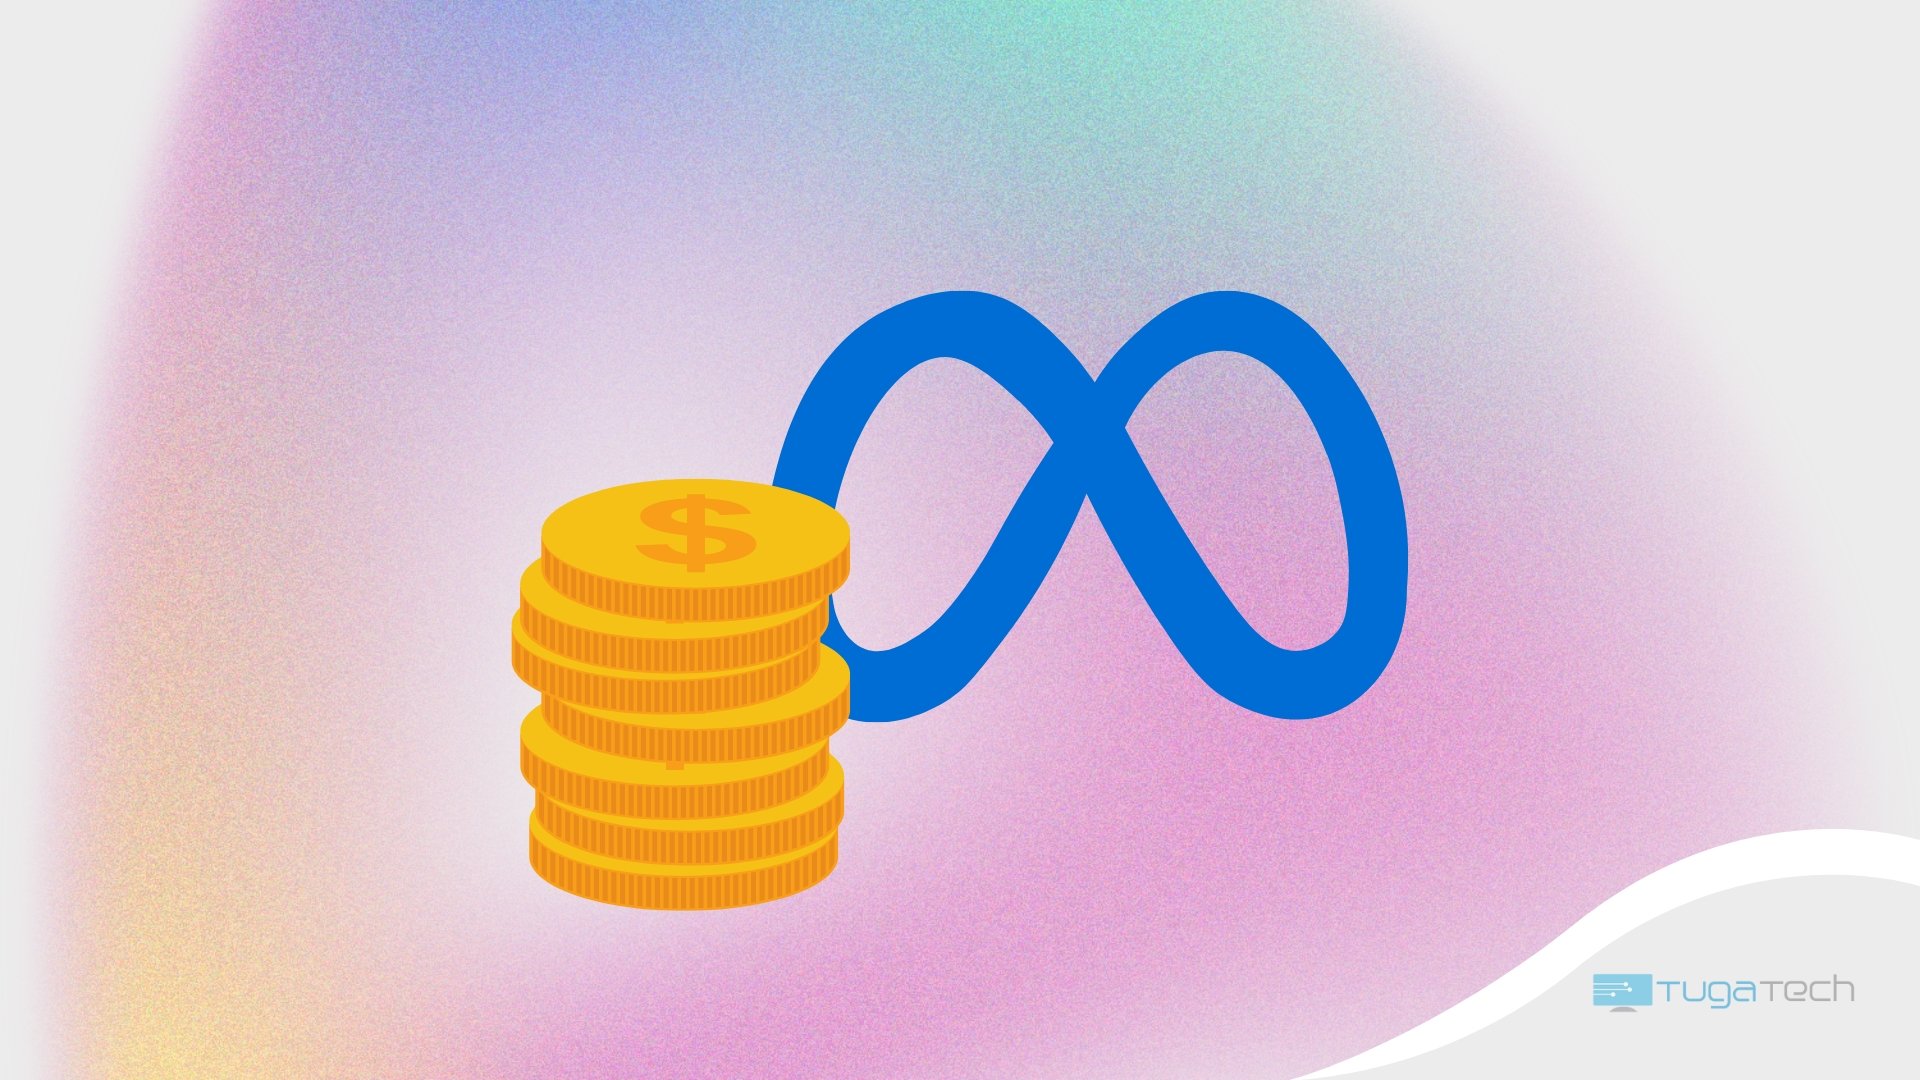 Logo da Meta com moedas de dólar